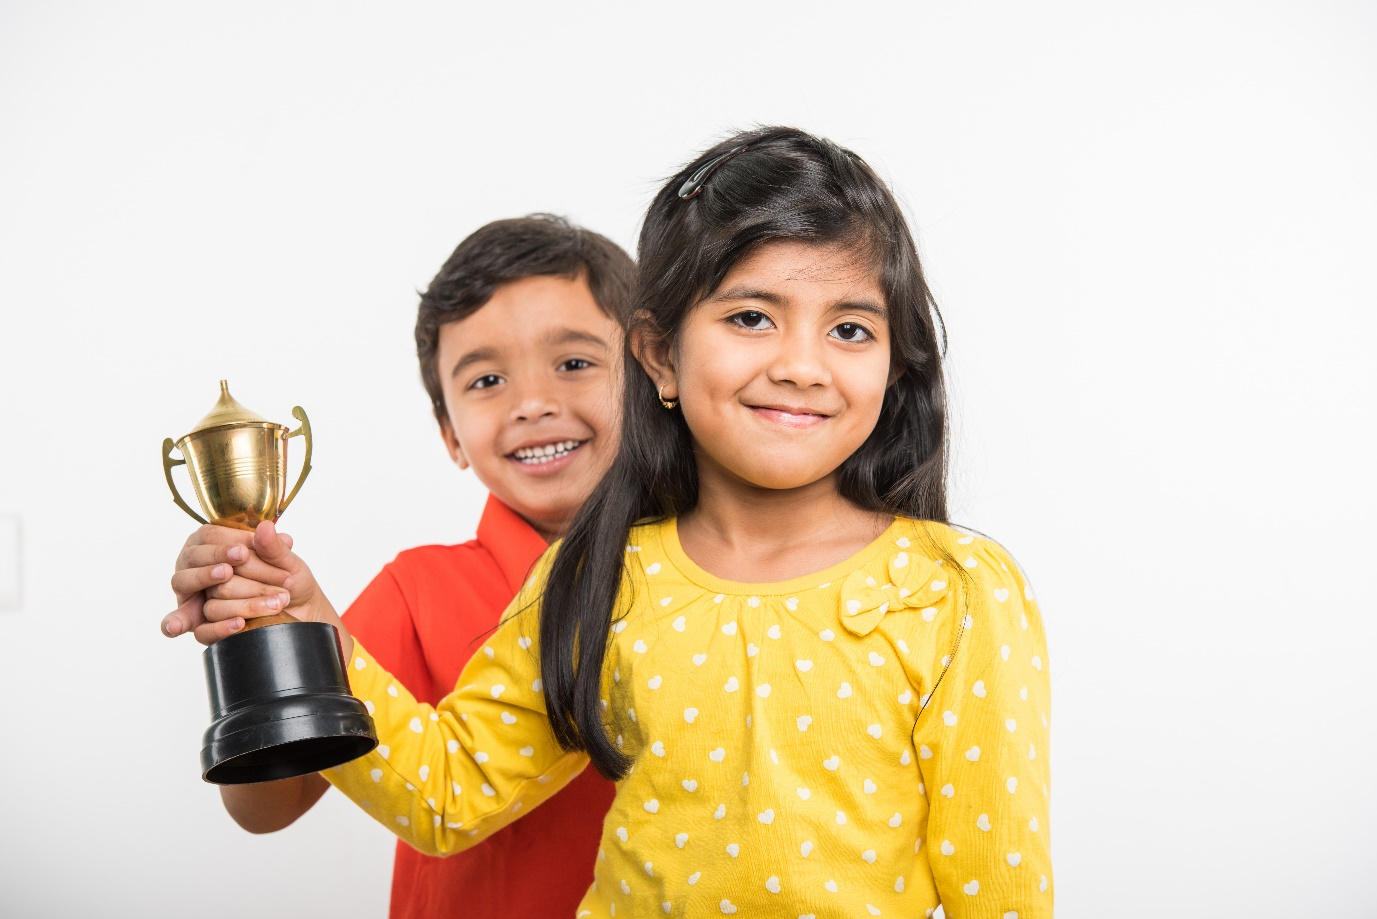 Rewards bring value in life for kids